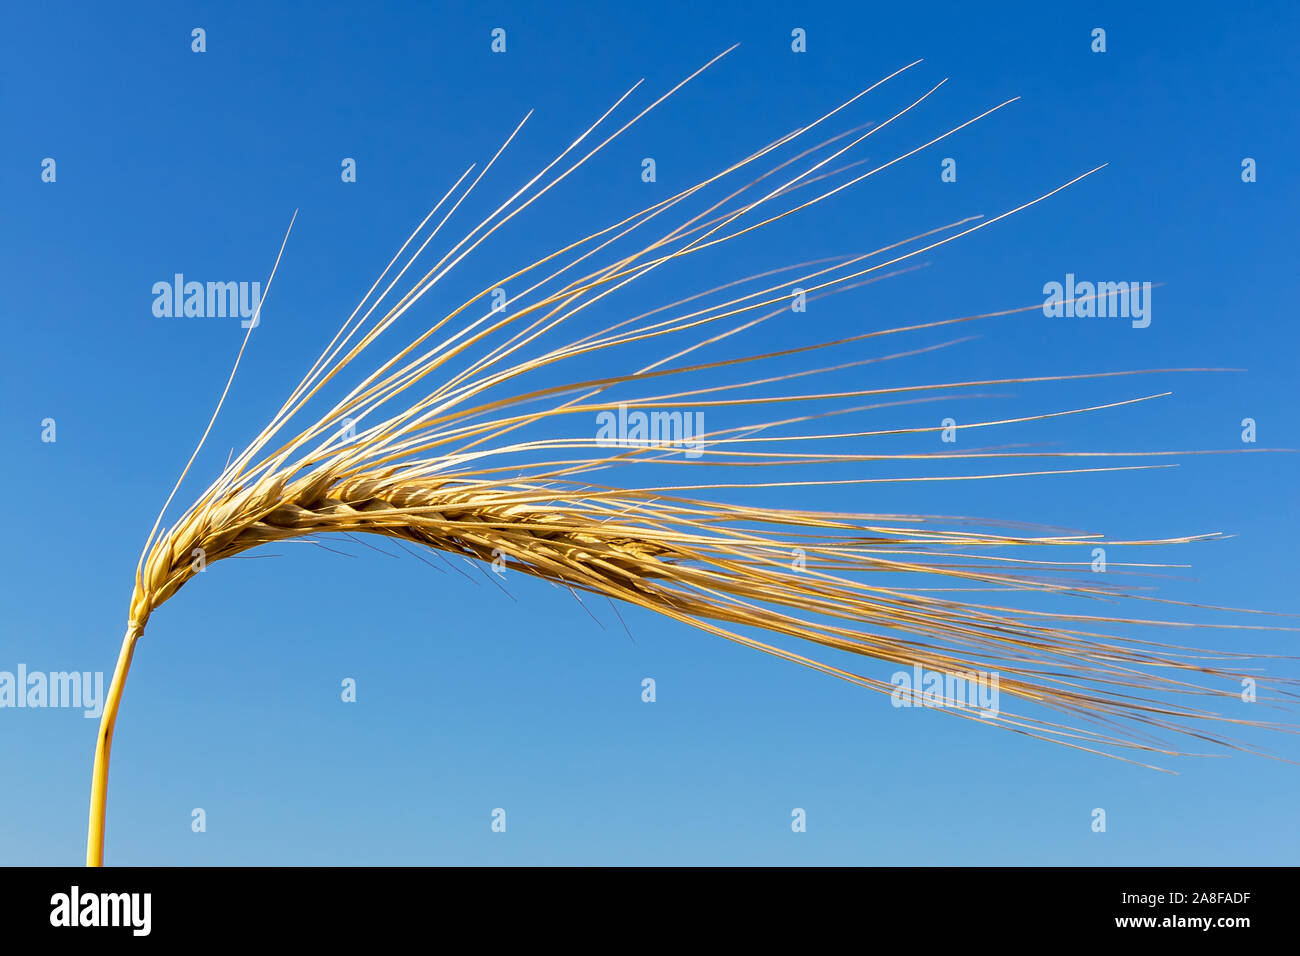 Ein Getreidefeld mit Gerste wartet auf die Ernte. Symbolfoto für Landwirtschaft und gesunde Ernährung. Einzelne Ähre, blauer Himmel, Lorn, Kornfeld, Foto Stock